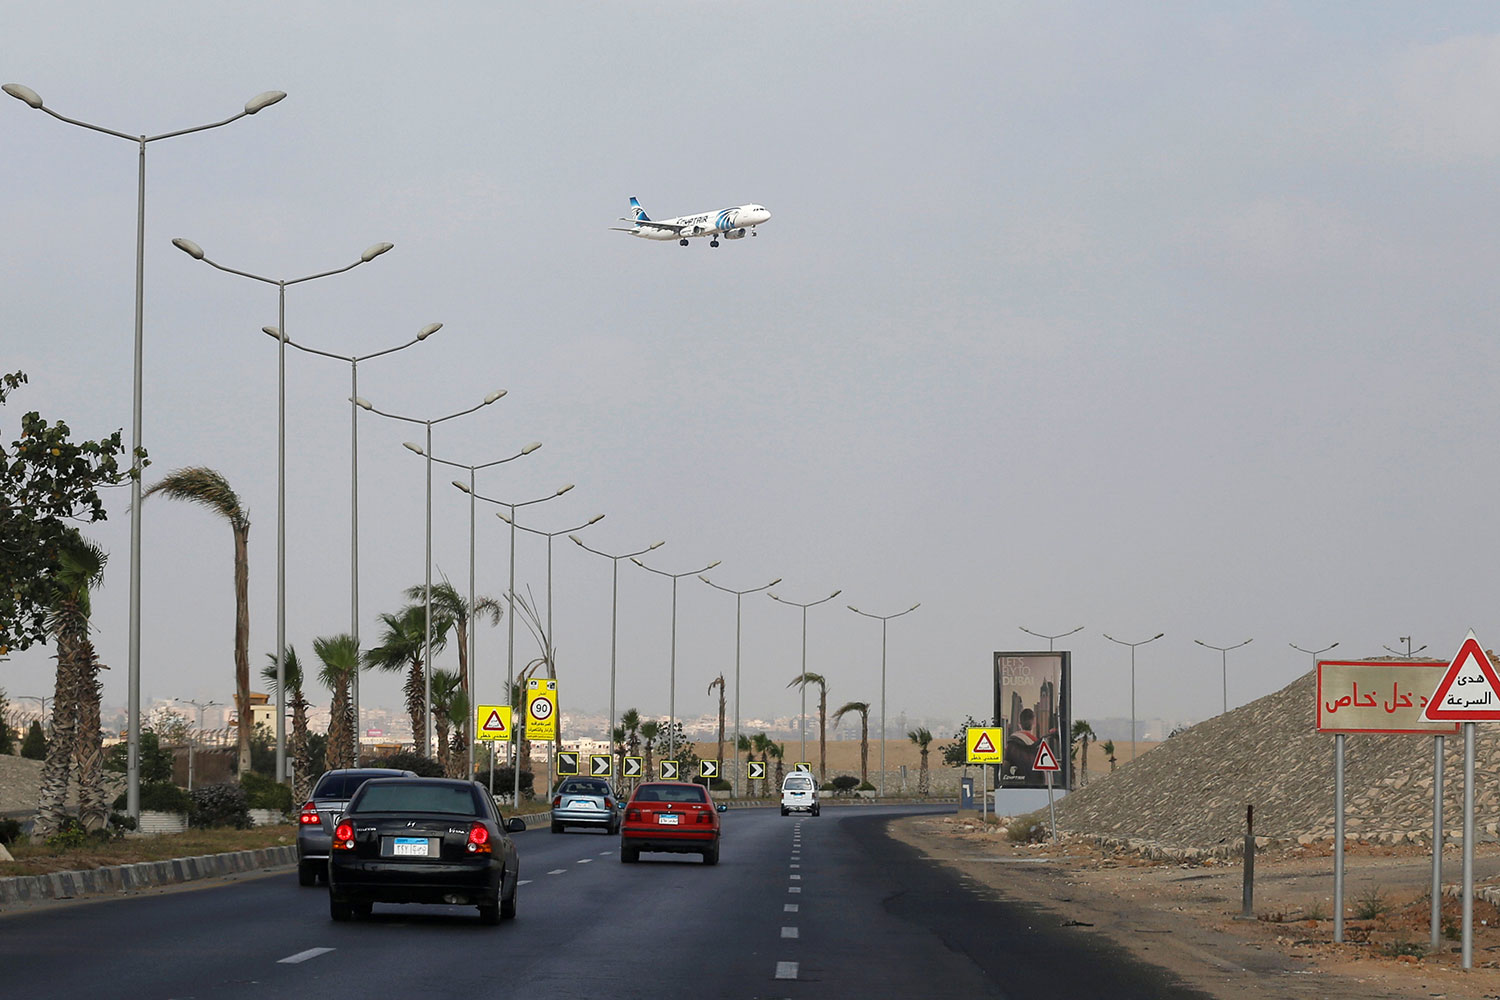 Egyptair confirma que el avión desaparecido "se ha estrellado"